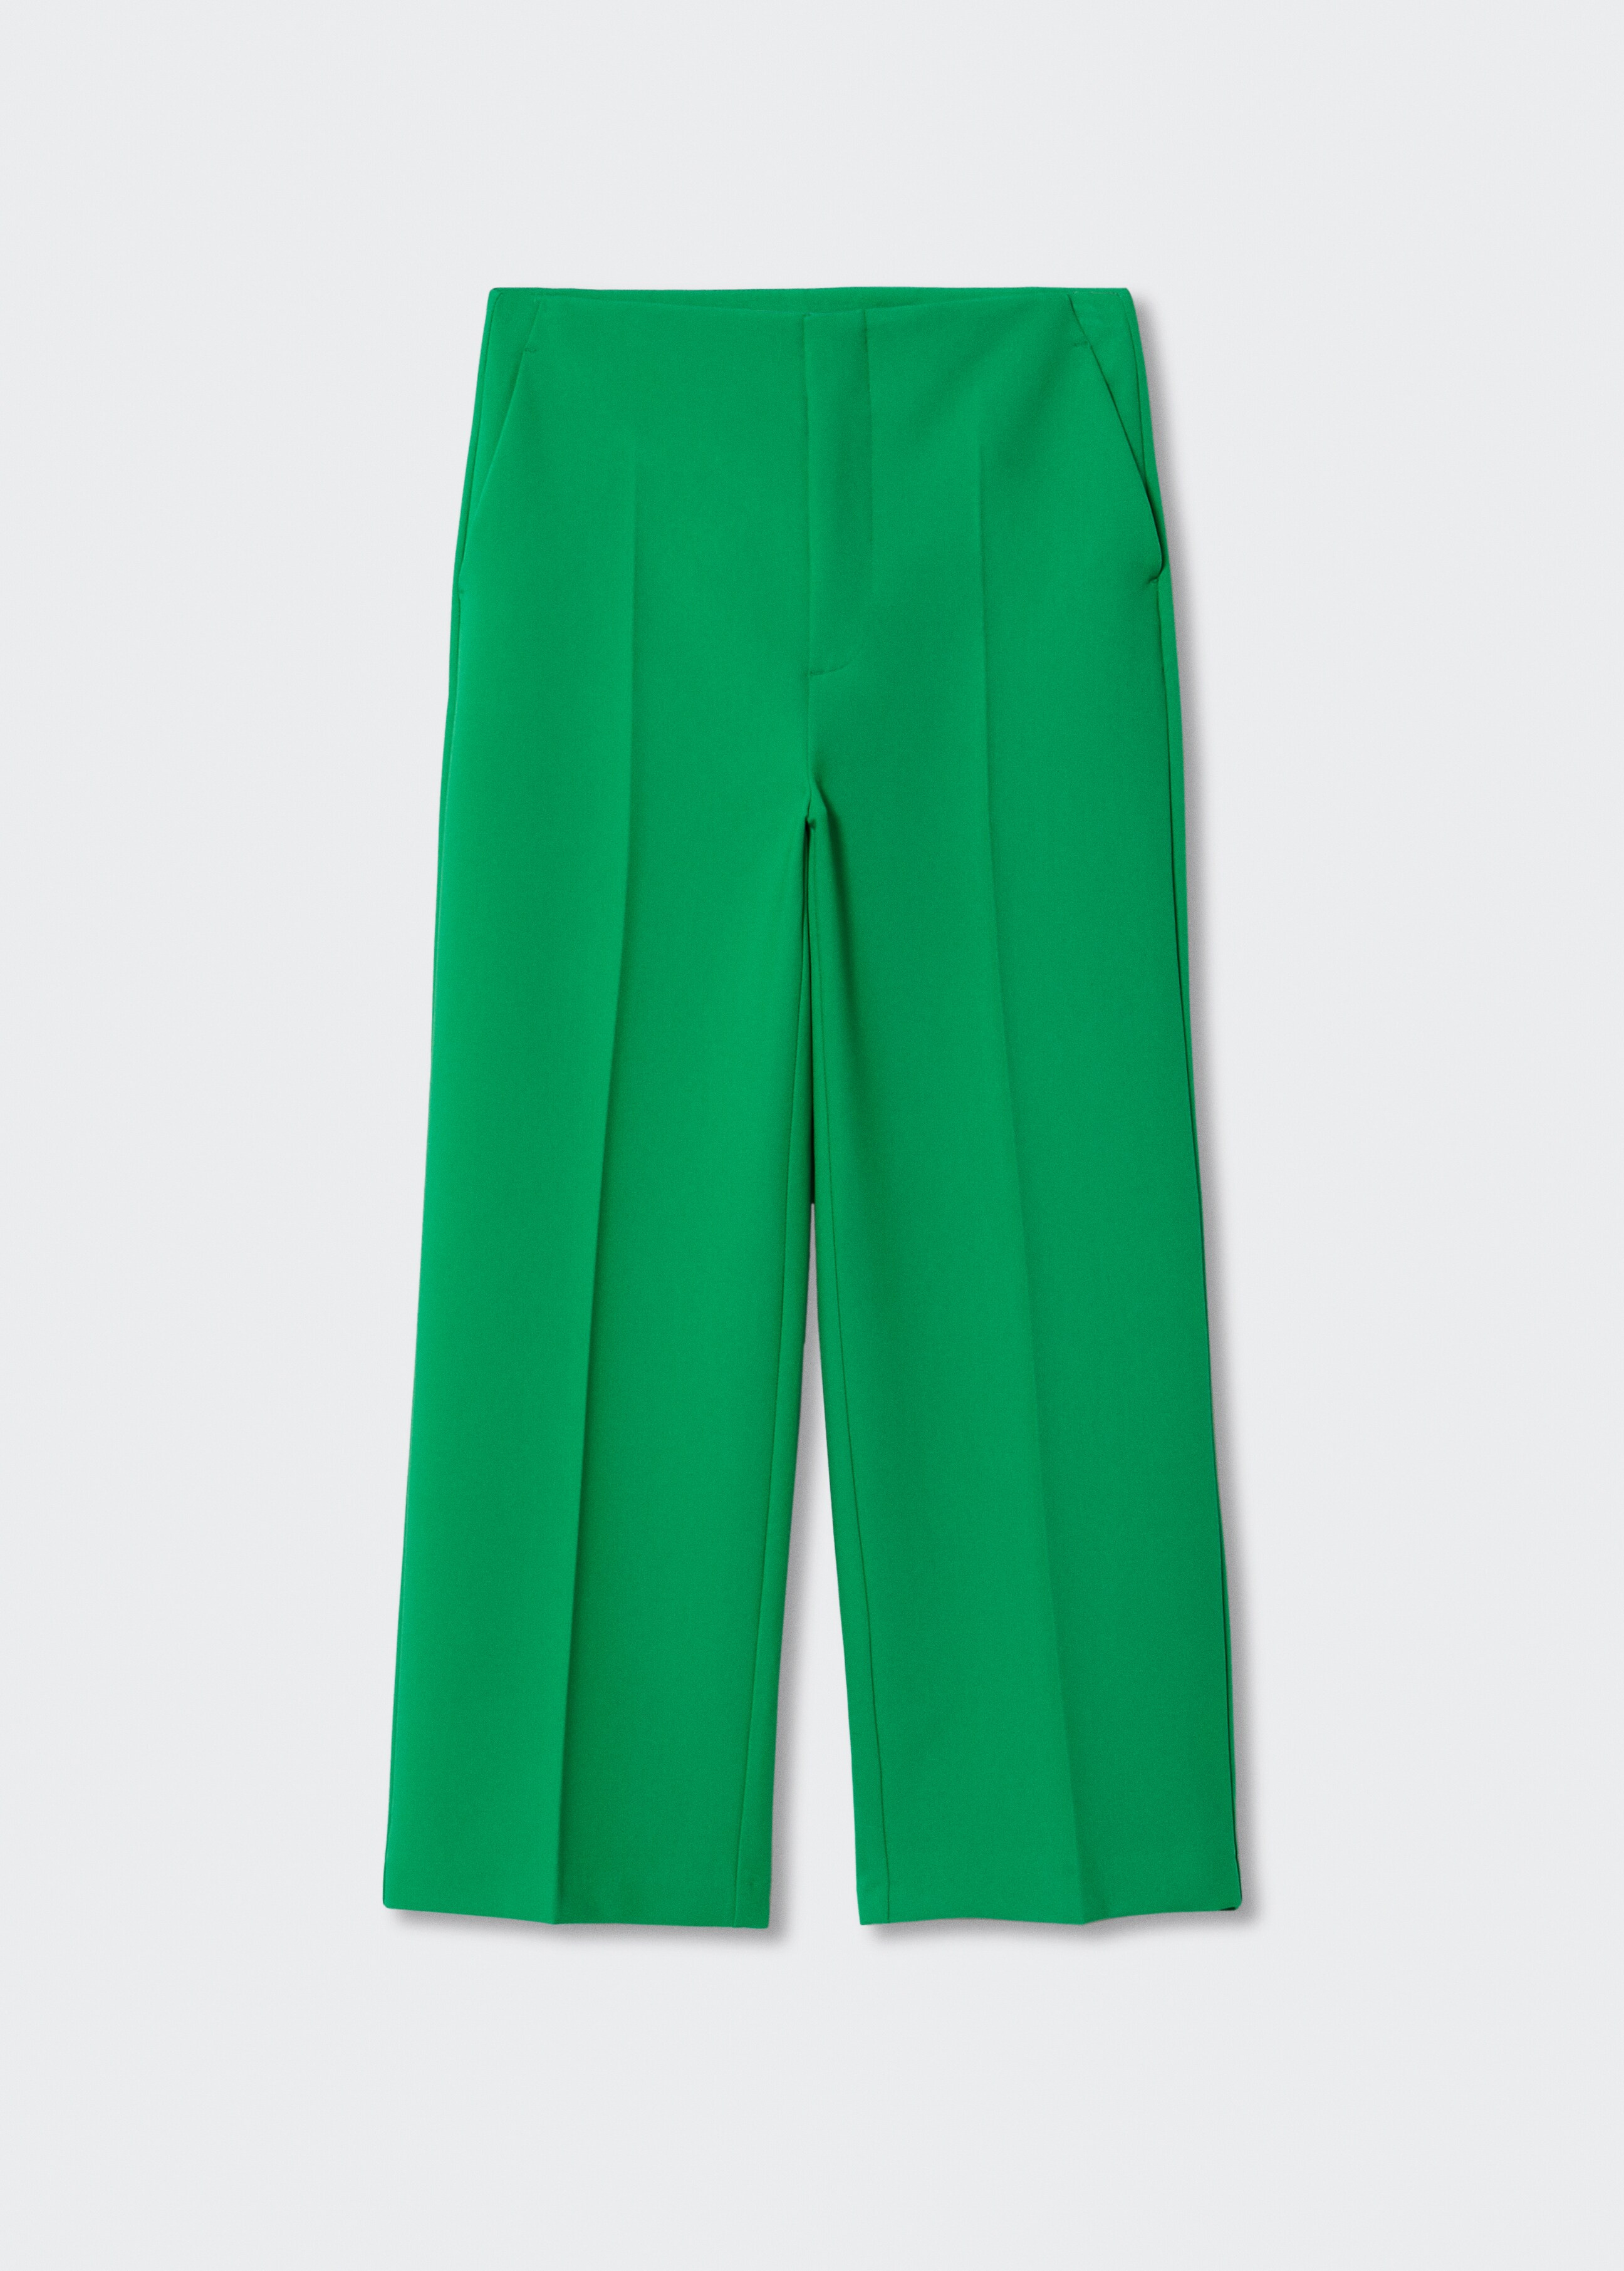 Pantalón culotte traje - Artículo sin modelo